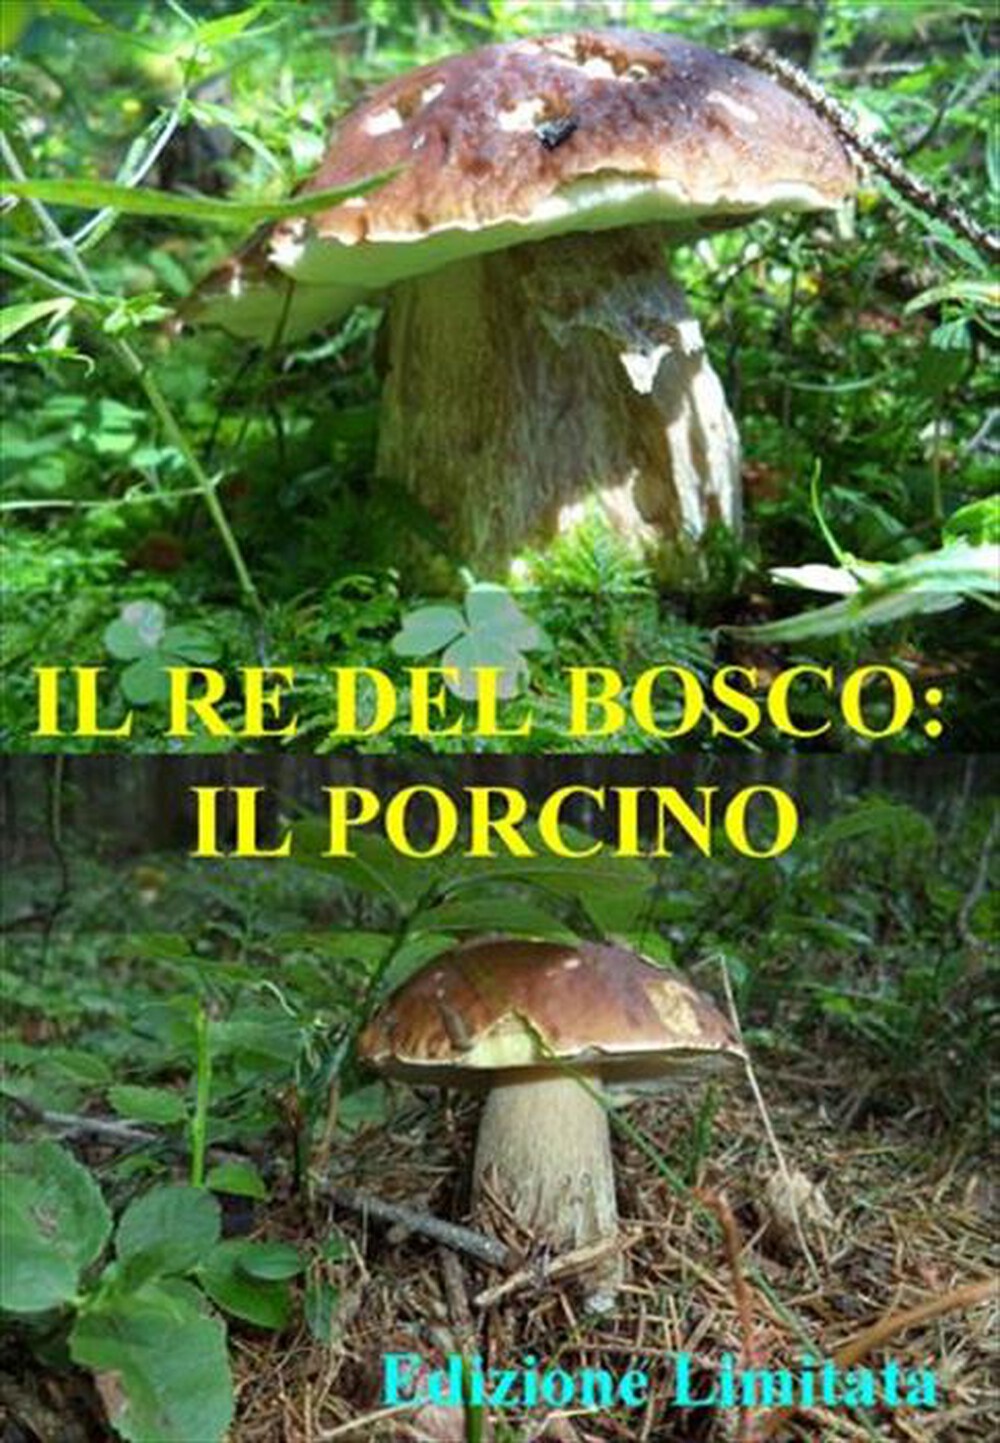 "DNA - Re Del Bosco (Il) - Il Porcino"